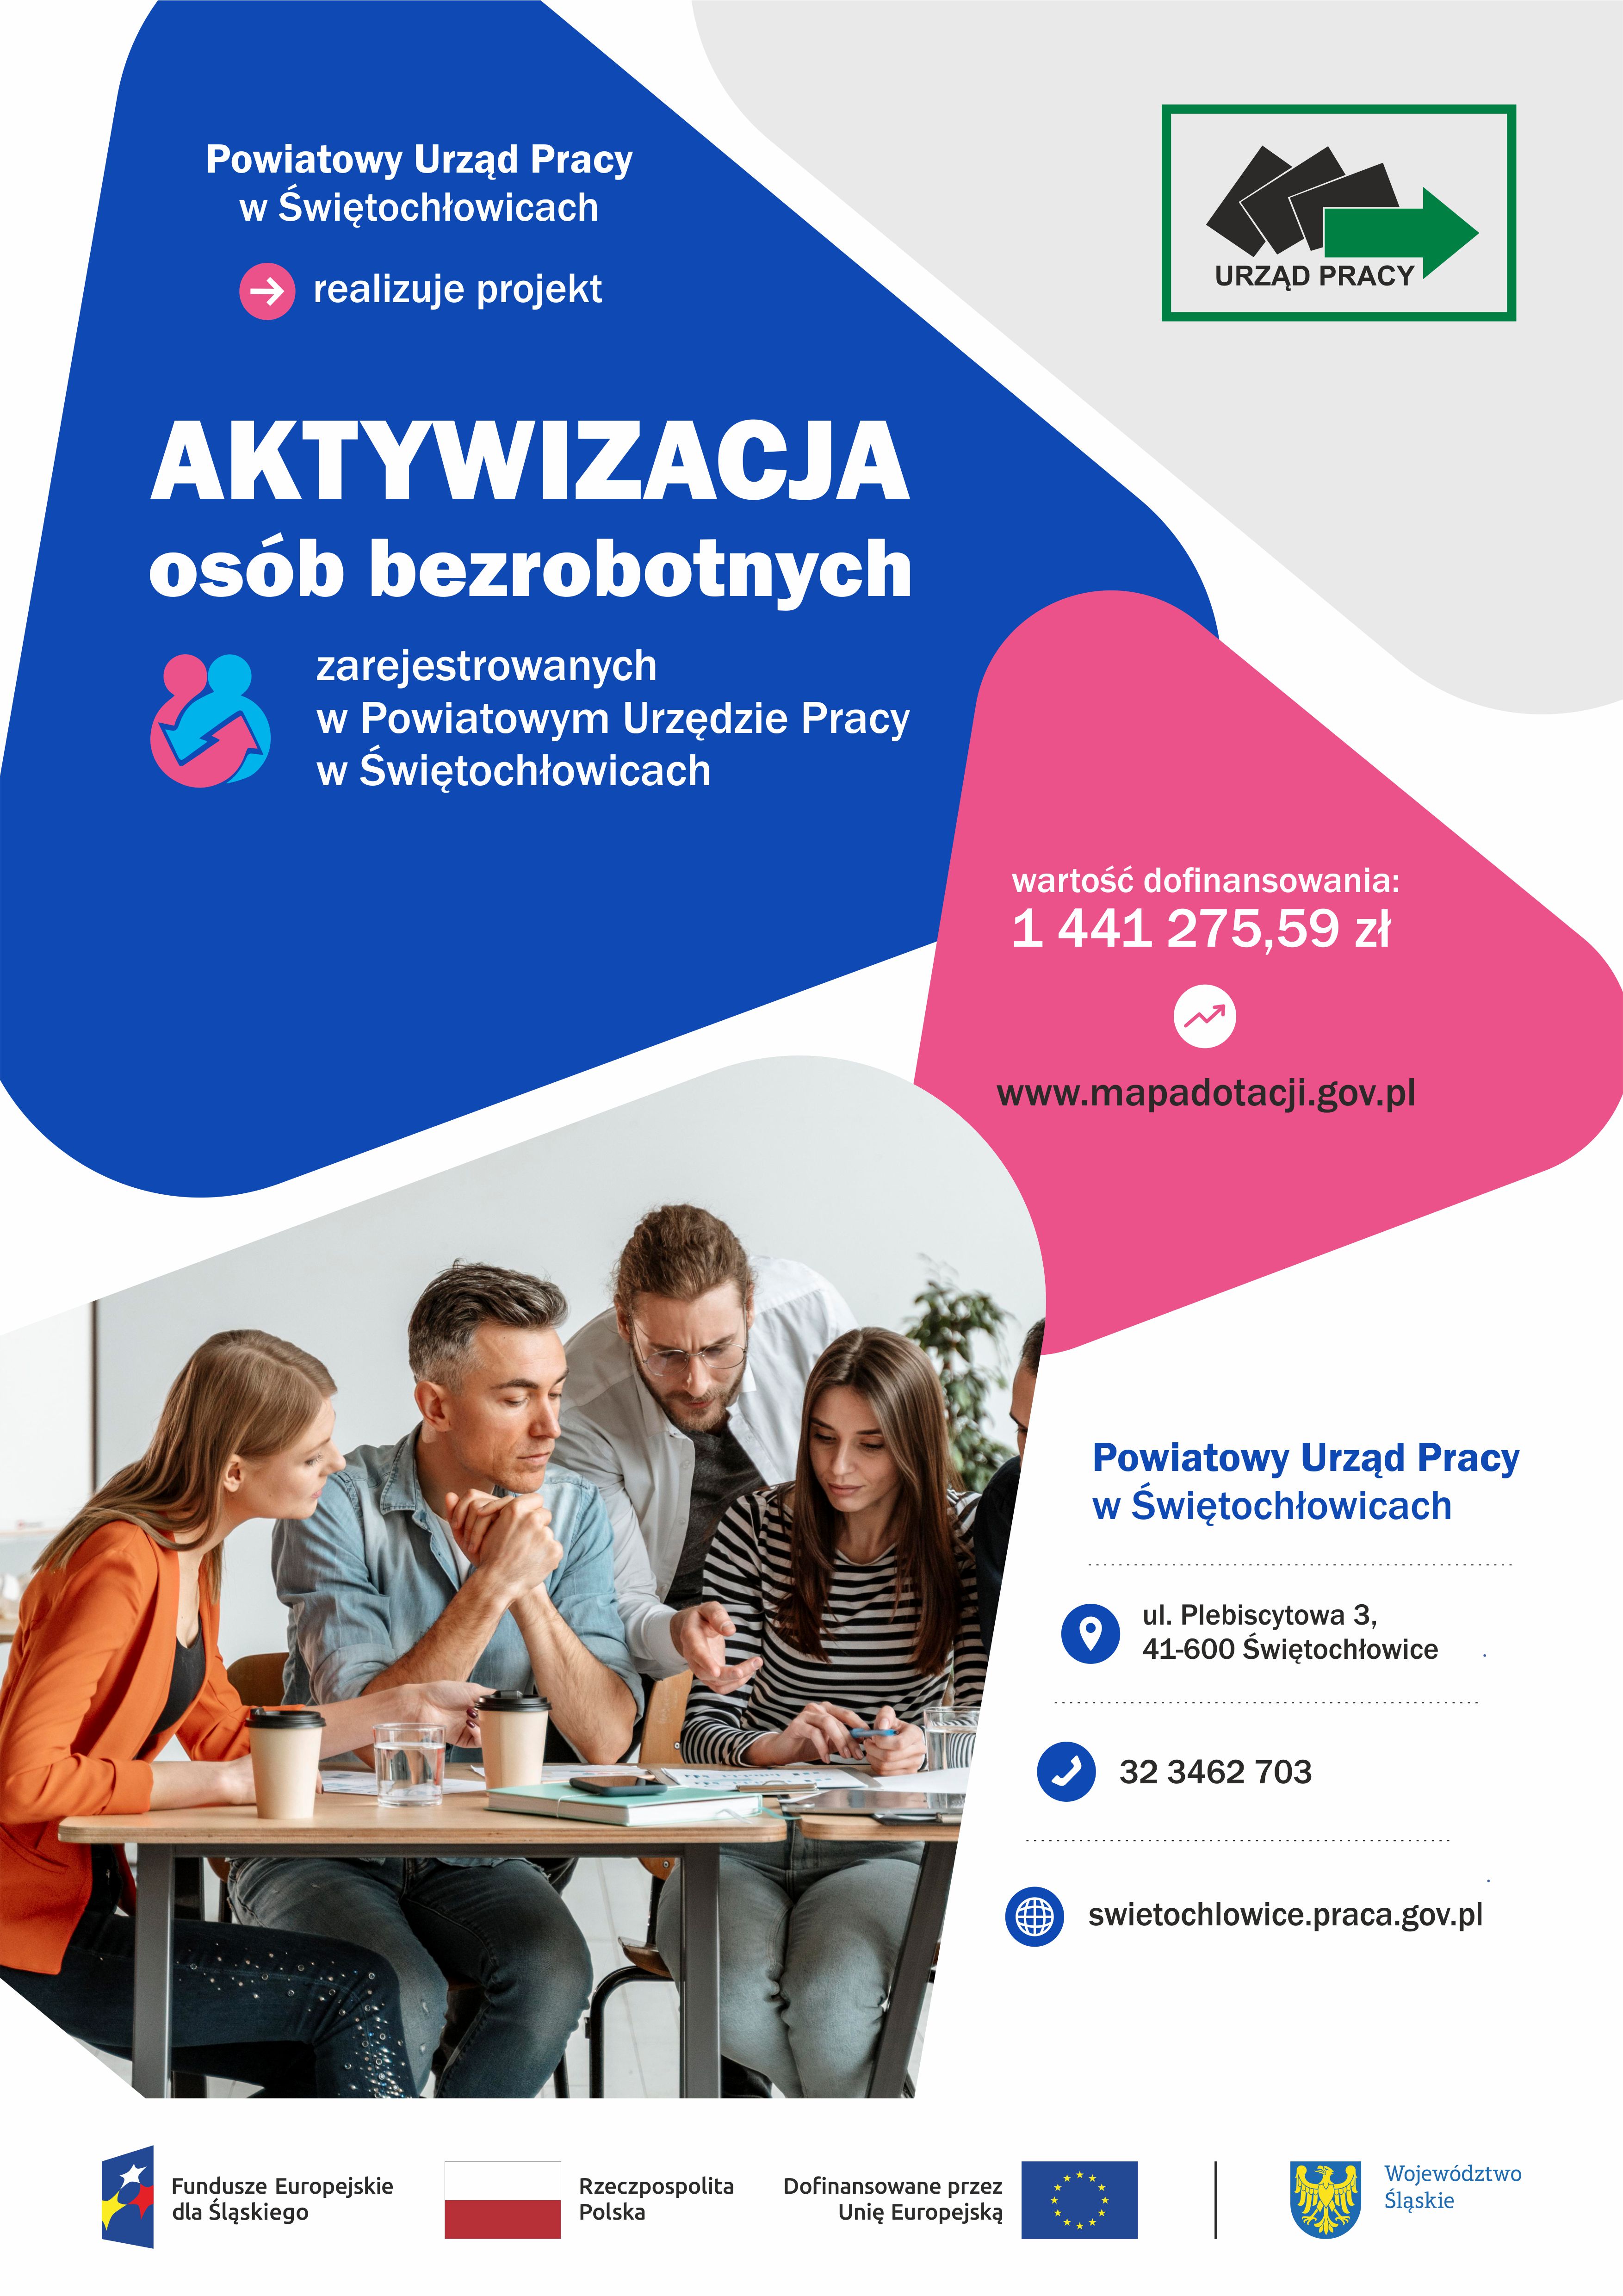 Obrazek dla: „Aktywizacja osób bezrobotnych zarejestrowanych w Powiatowym Urzędzie Pracy w Świętochłowicach”